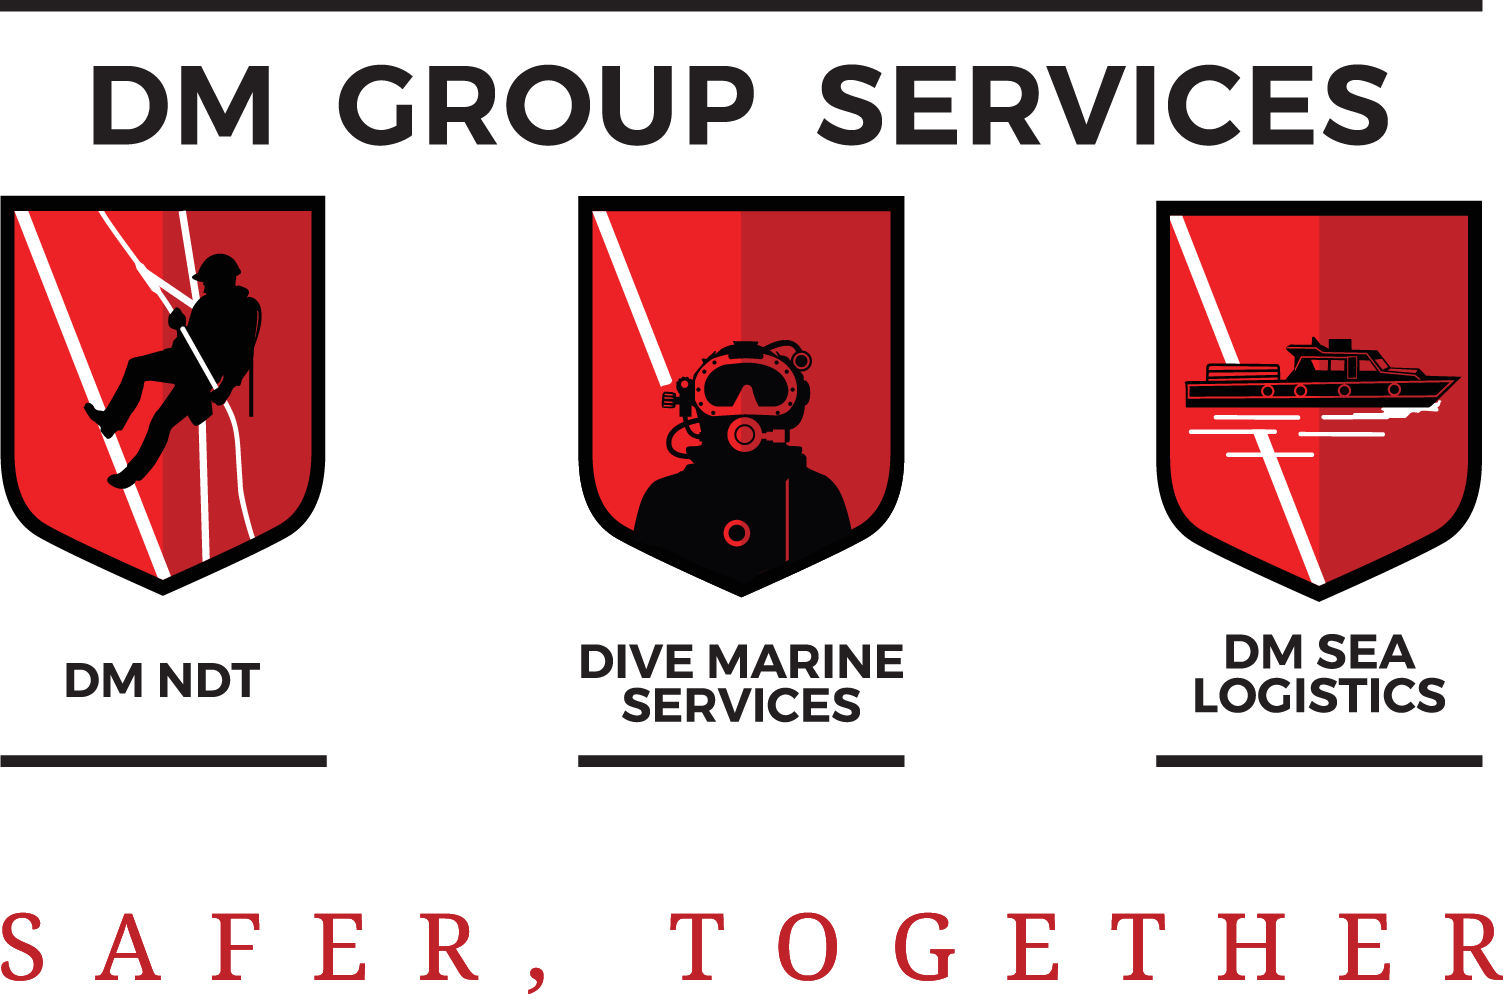 DM Group Services